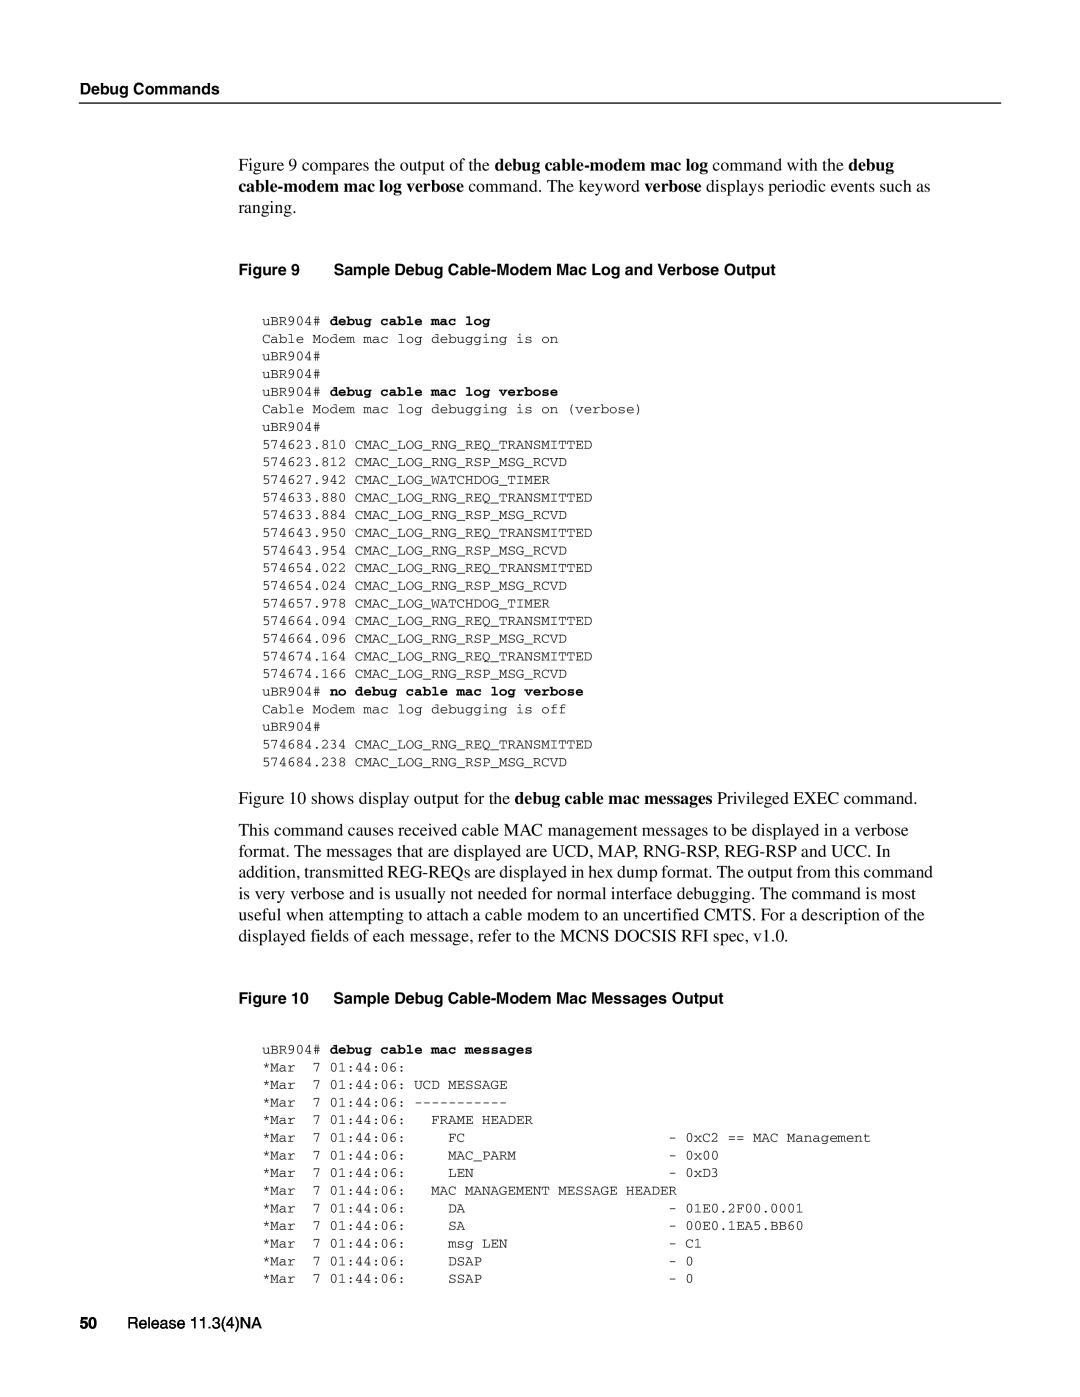 Cisco Systems UBR904 manual Release 11.34NA, uBR904# debug cable mac log verbose, debug cable mac messages 